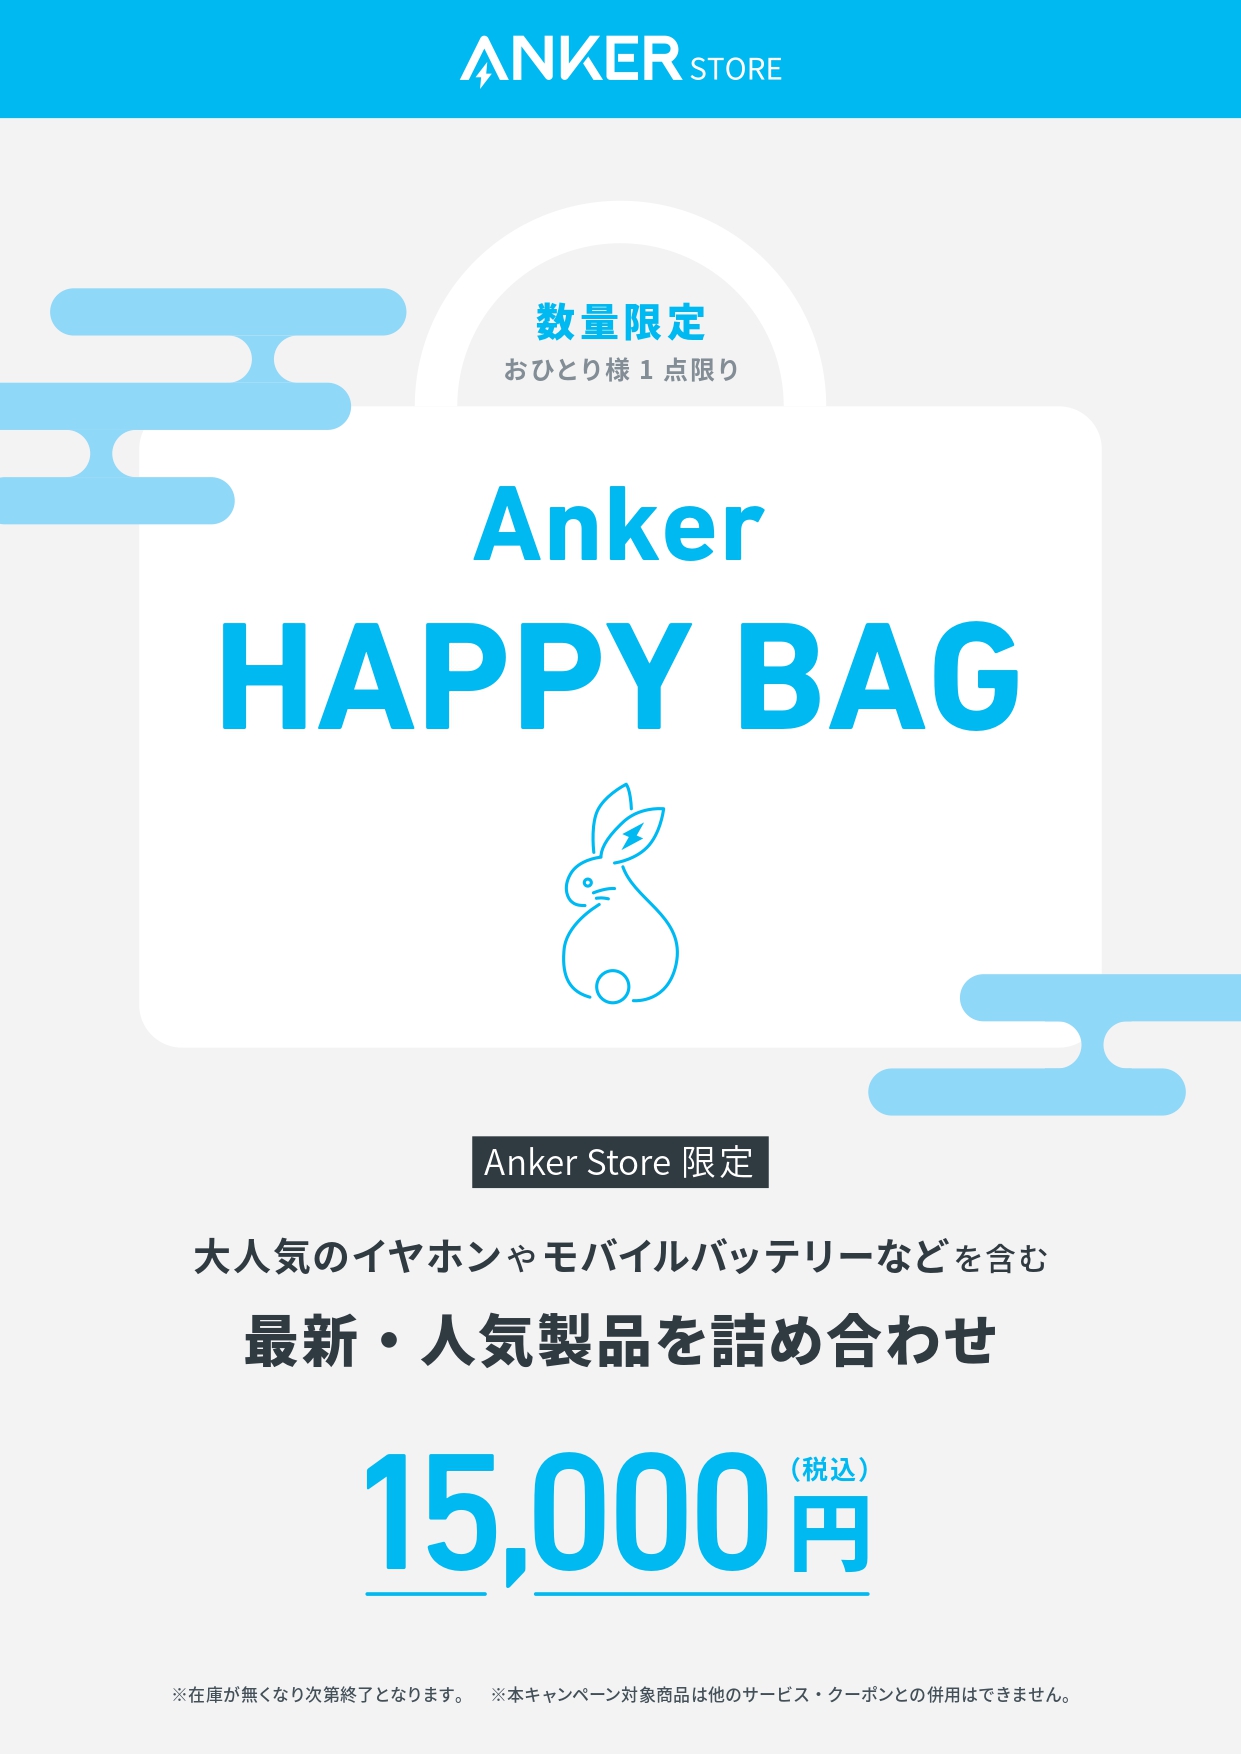 Anker Store on Twitter: 